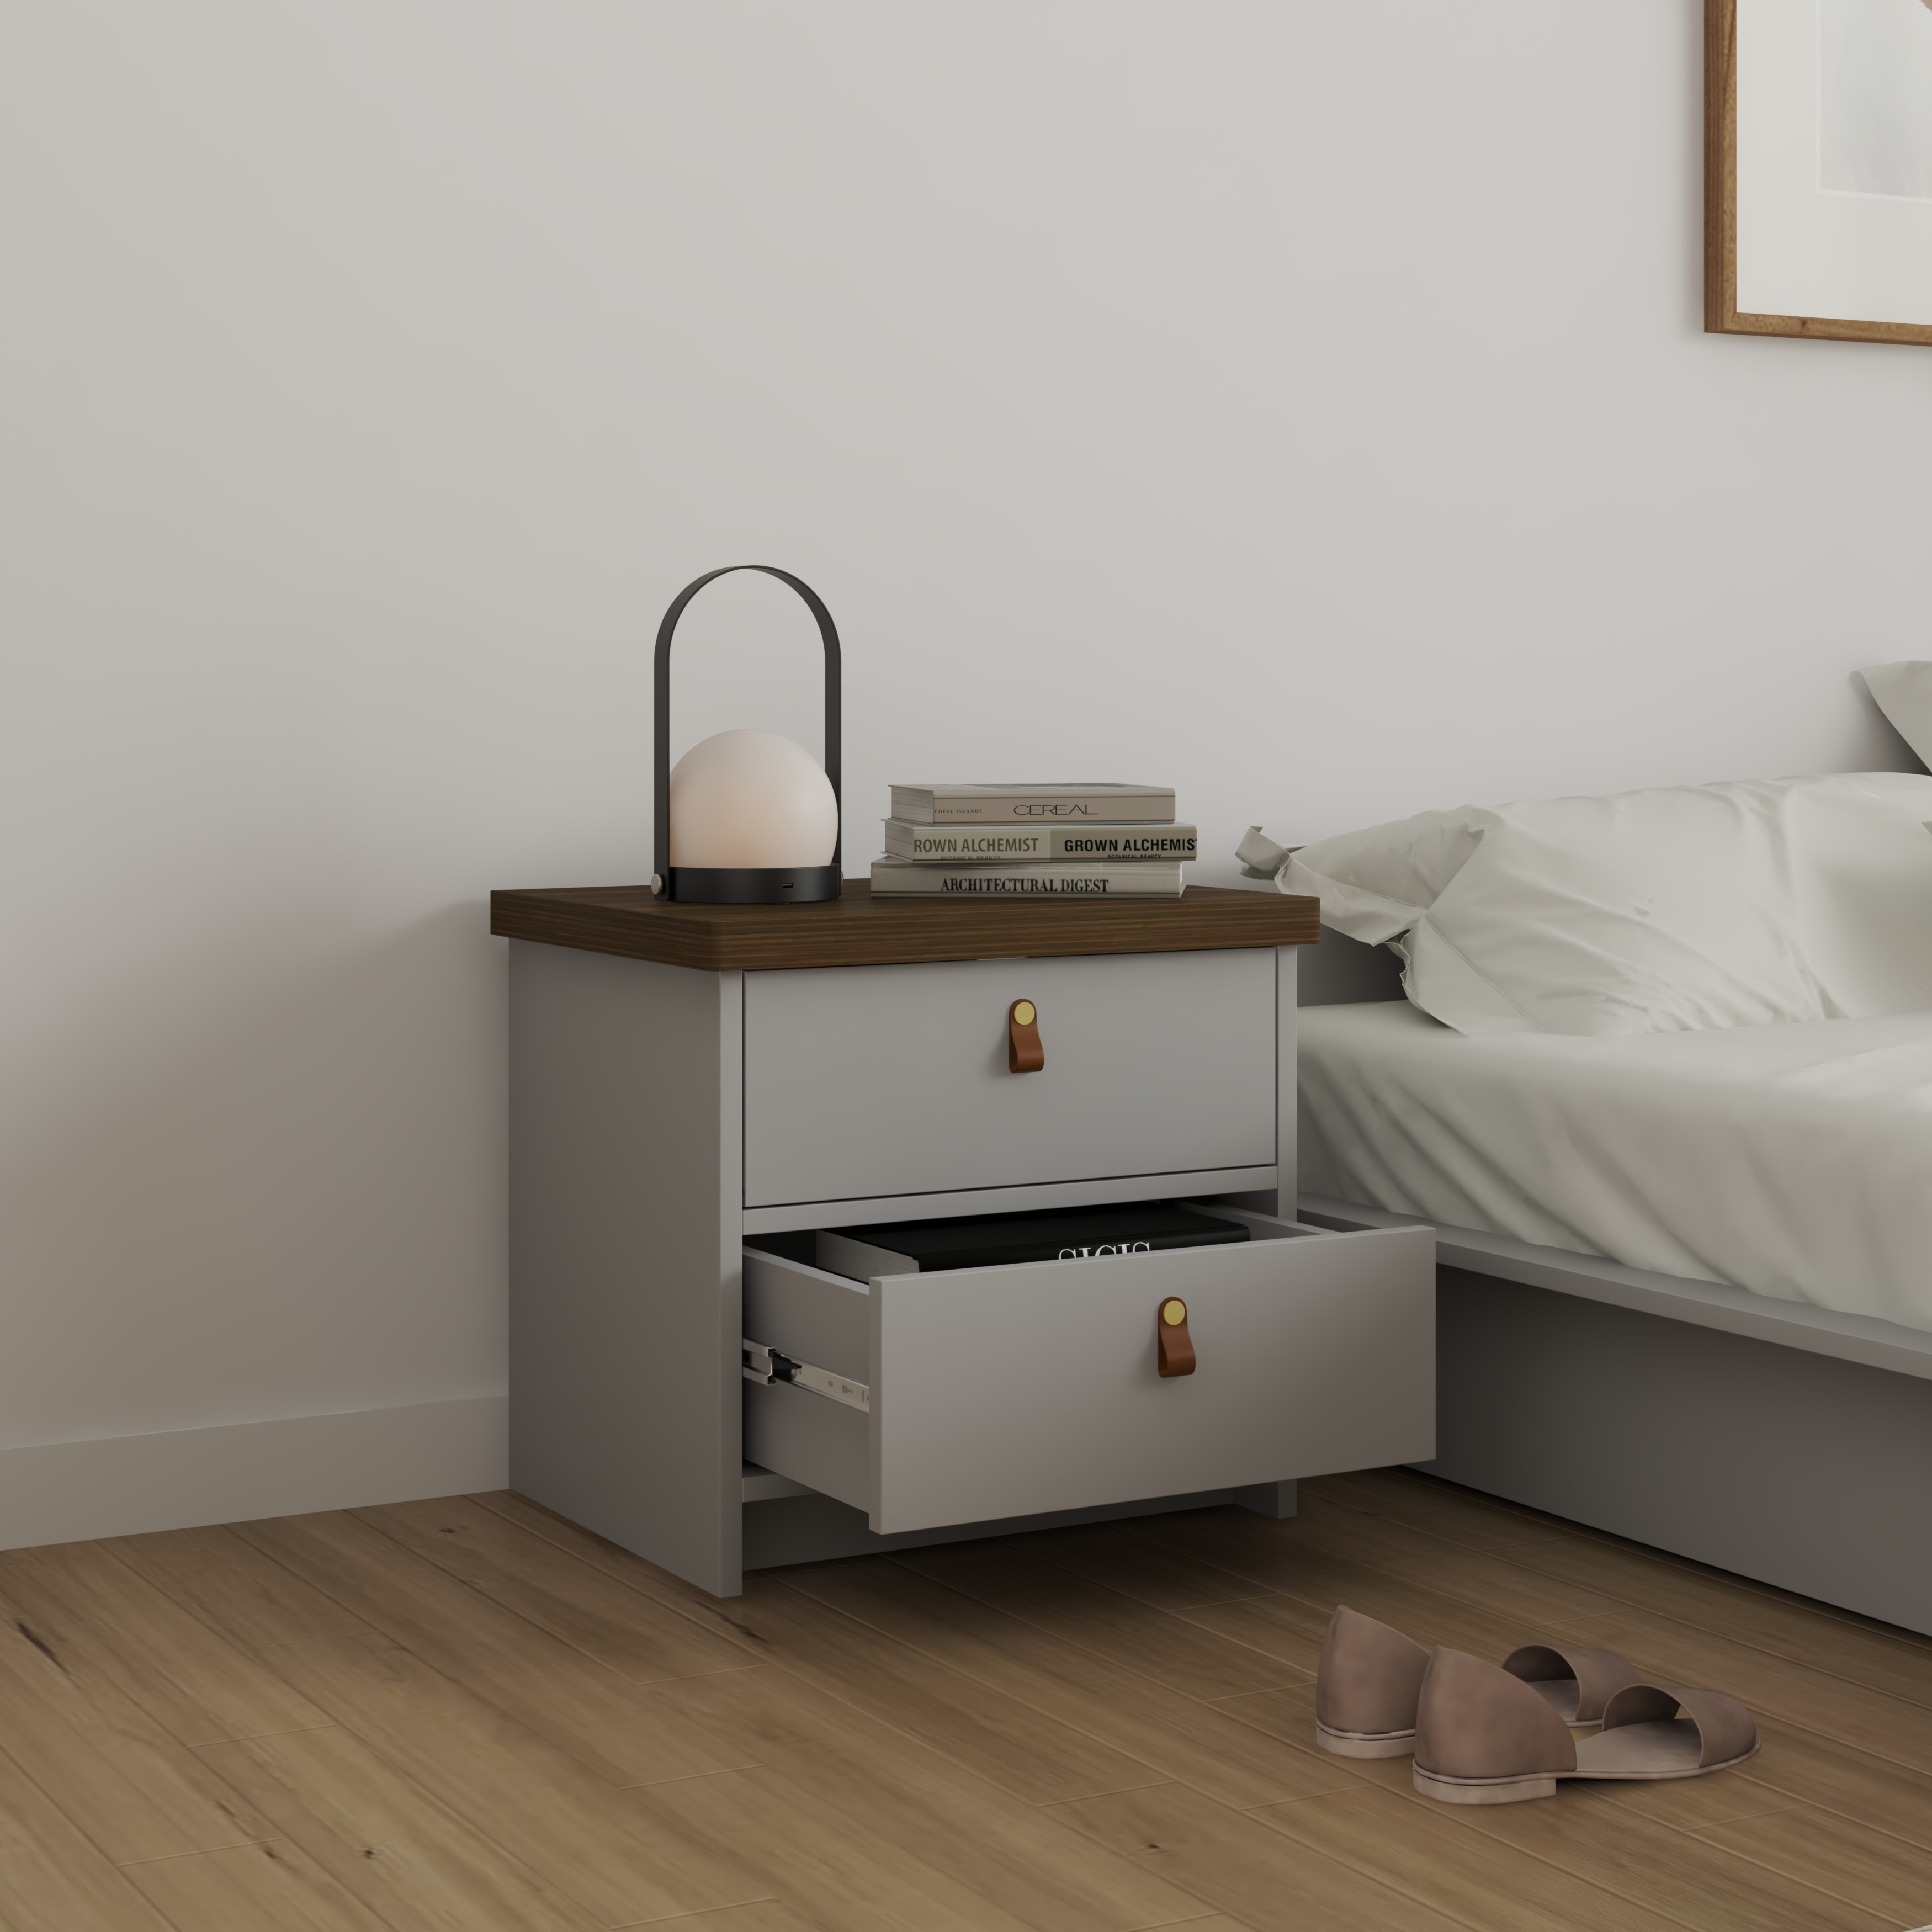 [Happy Home Furniture] NOMIA , Táp đầu giường 2 ngăn kéo , 50cm x 40cm x 46cm ( DxRxC), THK_069